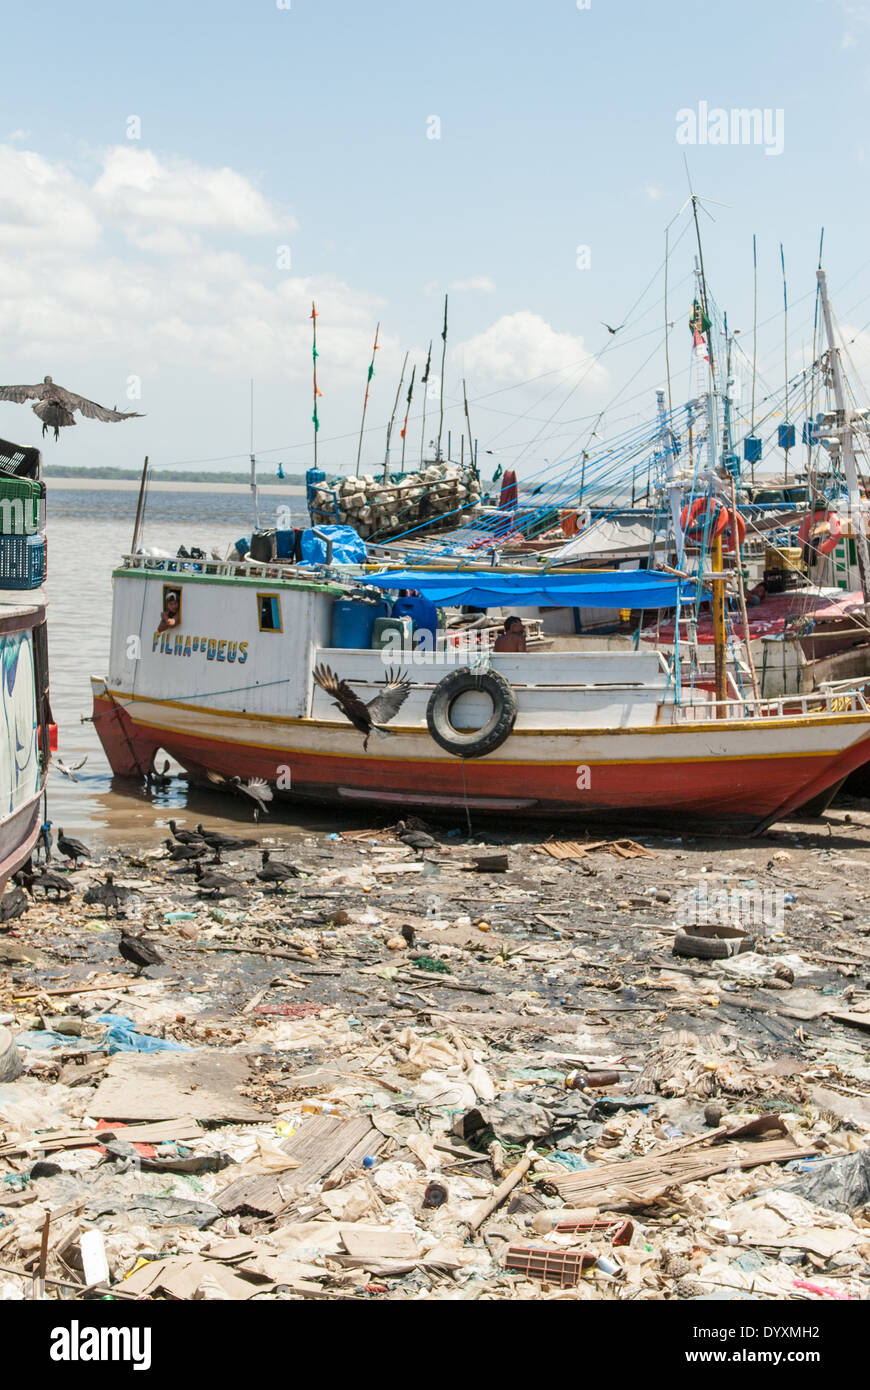 Belem, Bundesstaat Para, Brasilien. Ver-o-Peso Fischmarkt Hafen mit Müll und Geier. "Tochter des Gottes" (Filha de Deus) Flussschiff. Stockfoto